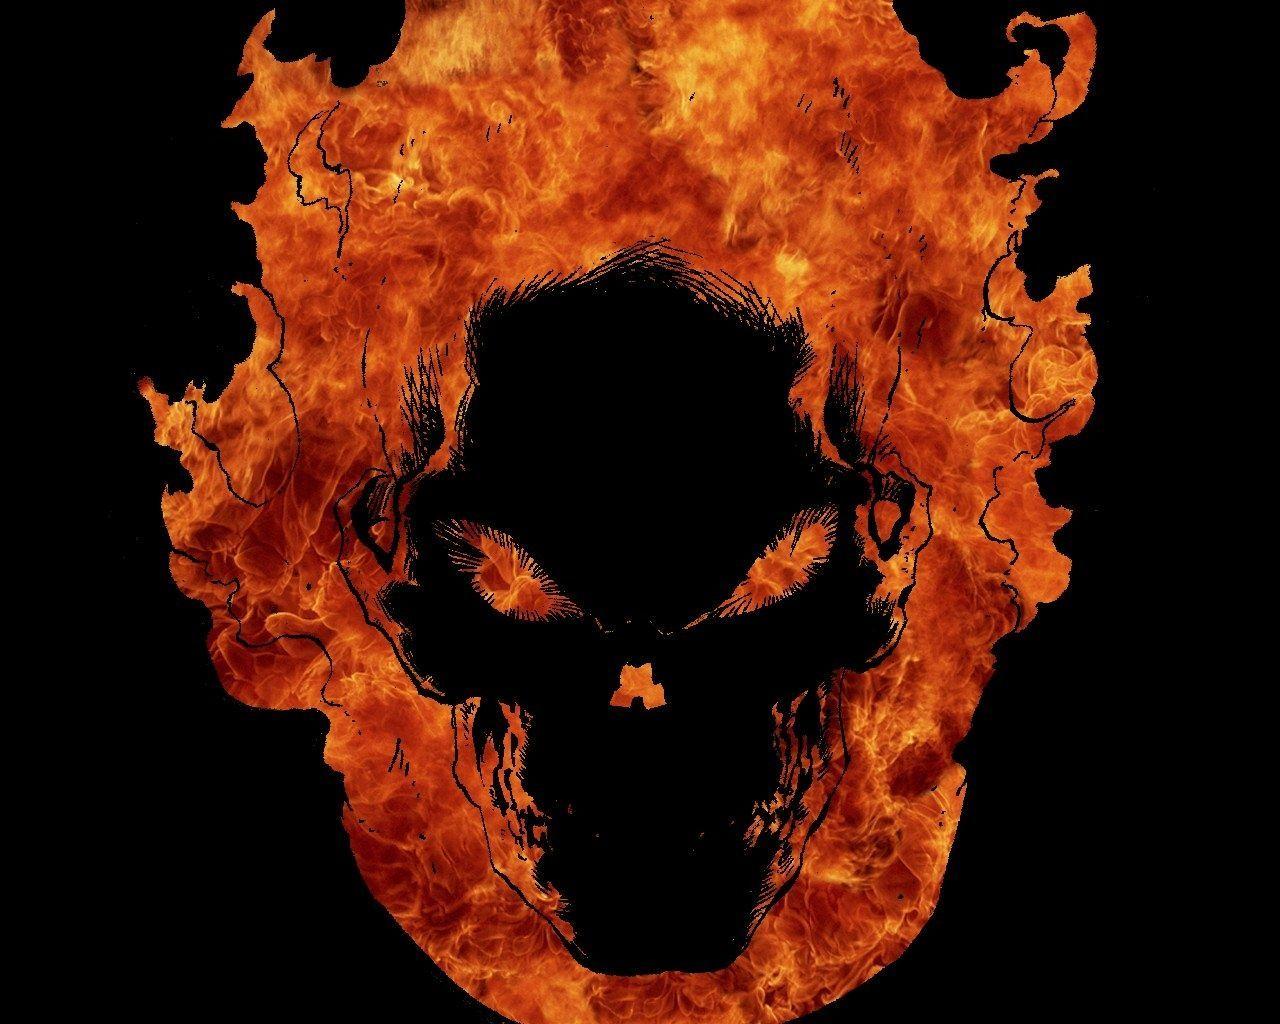 Fire Skull. Ghost rider wallpaper, Ghost rider, Ghost rider image